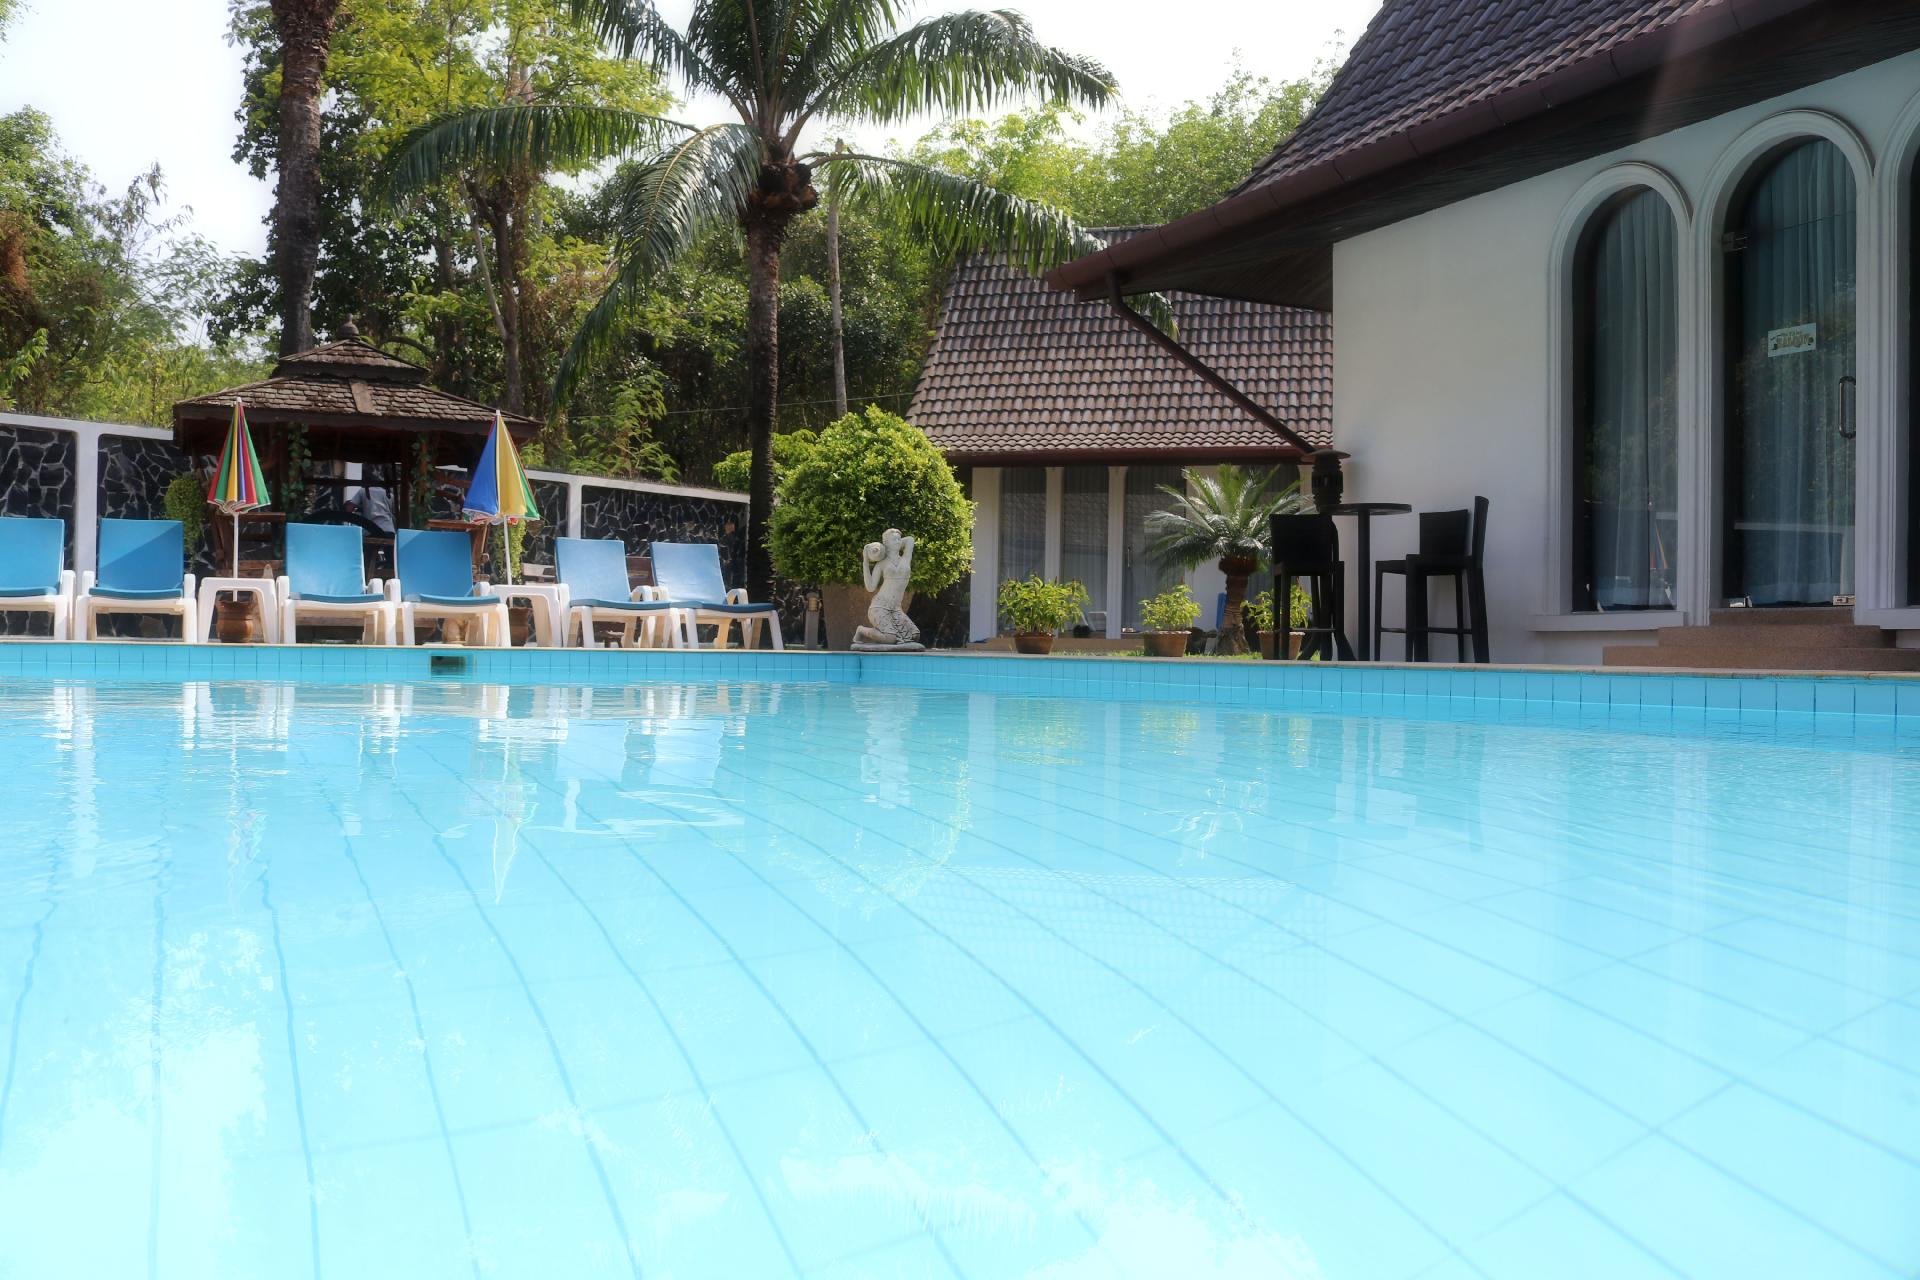 Ferienhaus mit Privatpool für 19 Personen ca. Ferienhaus in Thailand